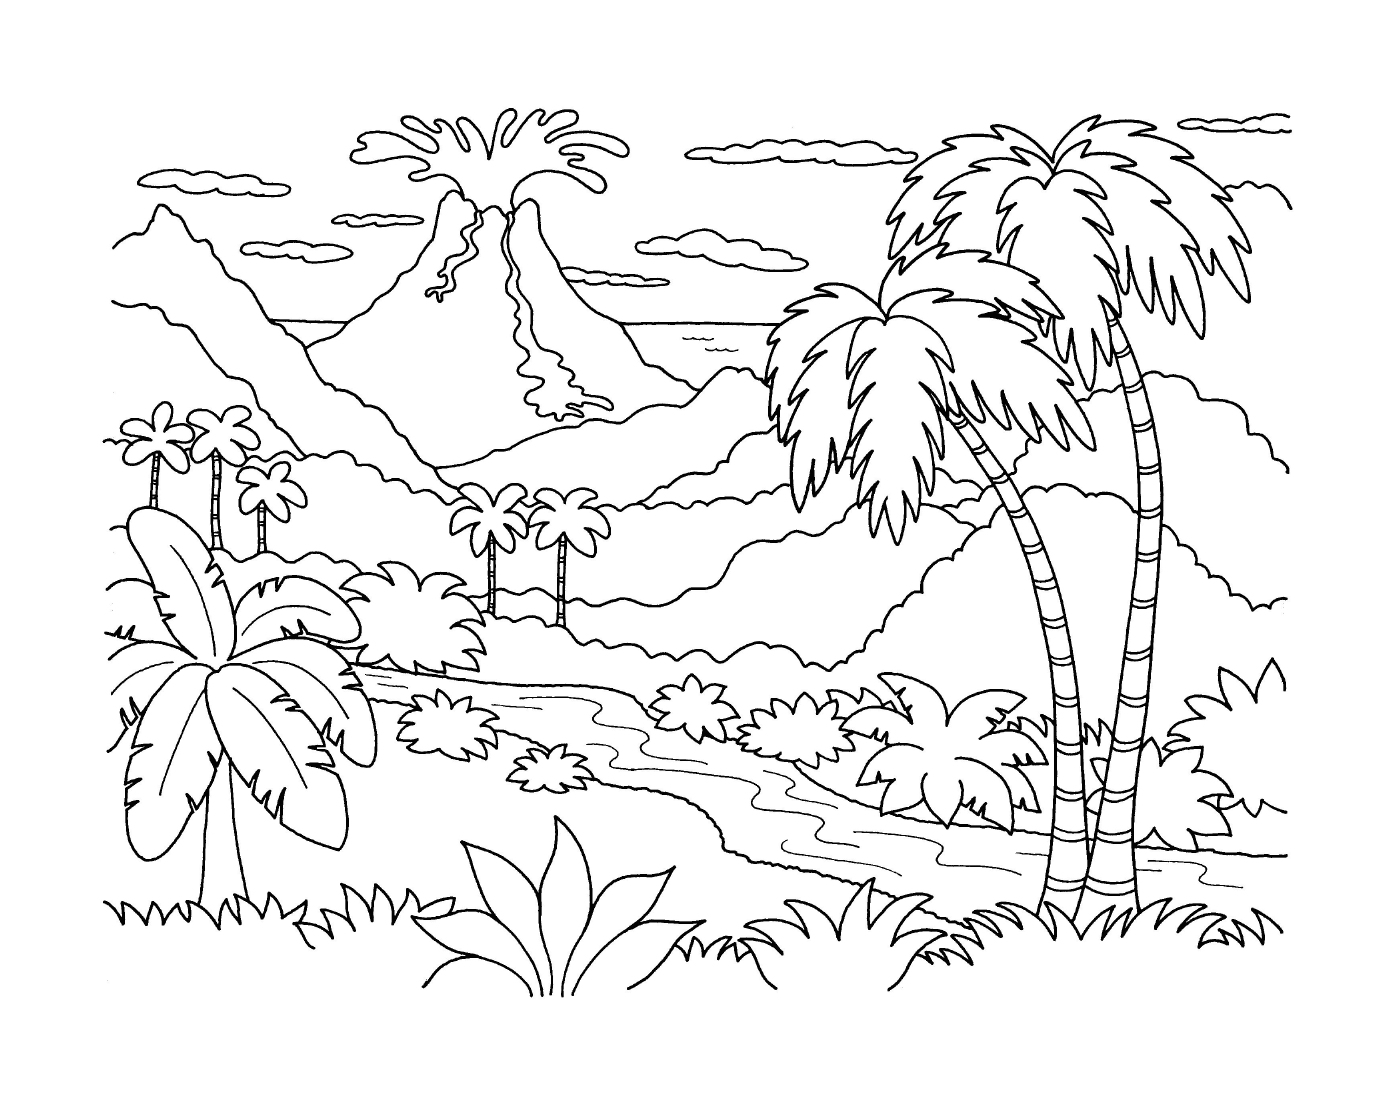   Un paysage tropical avec un volcan en éruption 